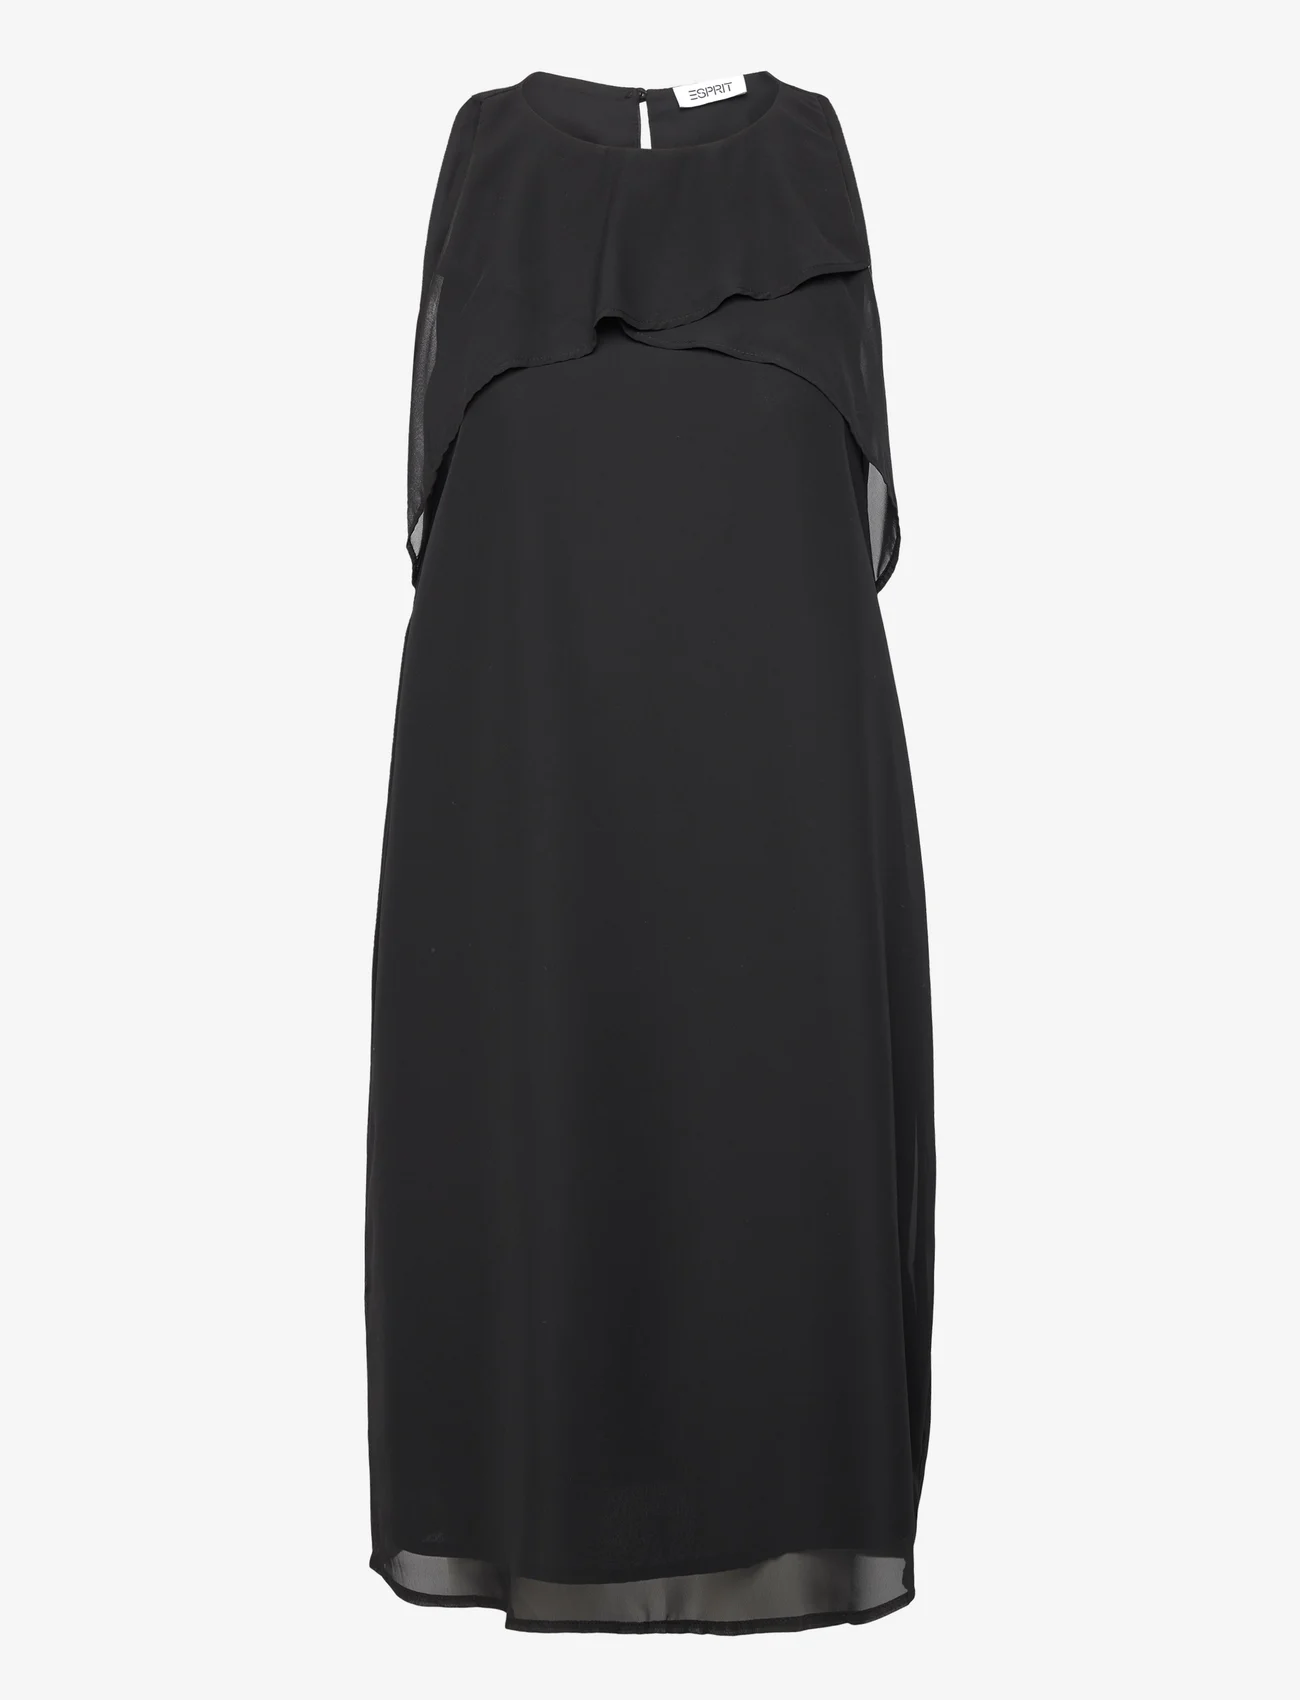 Esprit Casual - Dresses light woven - festtøj til outletpriser - black - 0